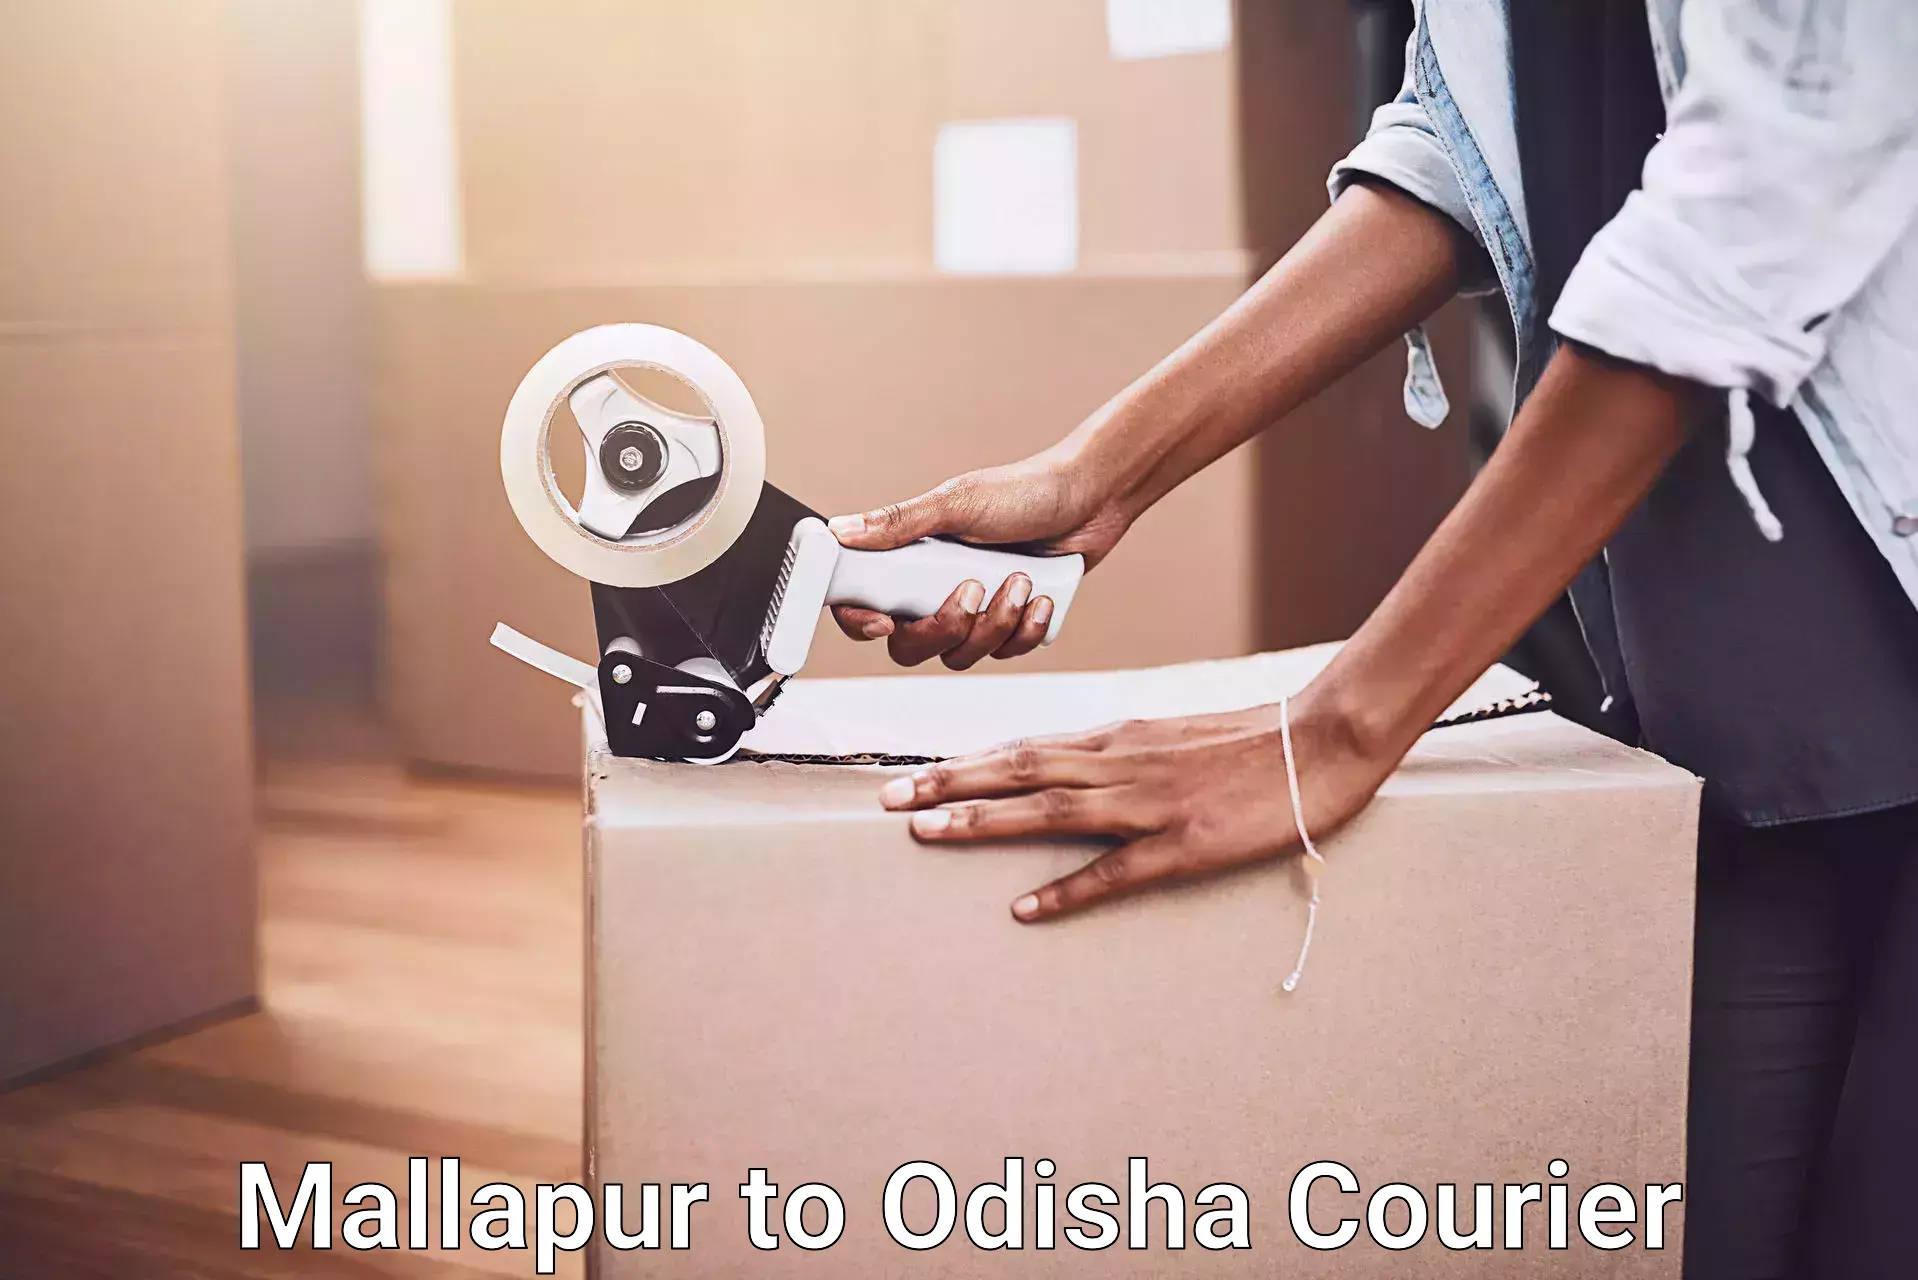 Furniture moving experts Mallapur to Baleswar